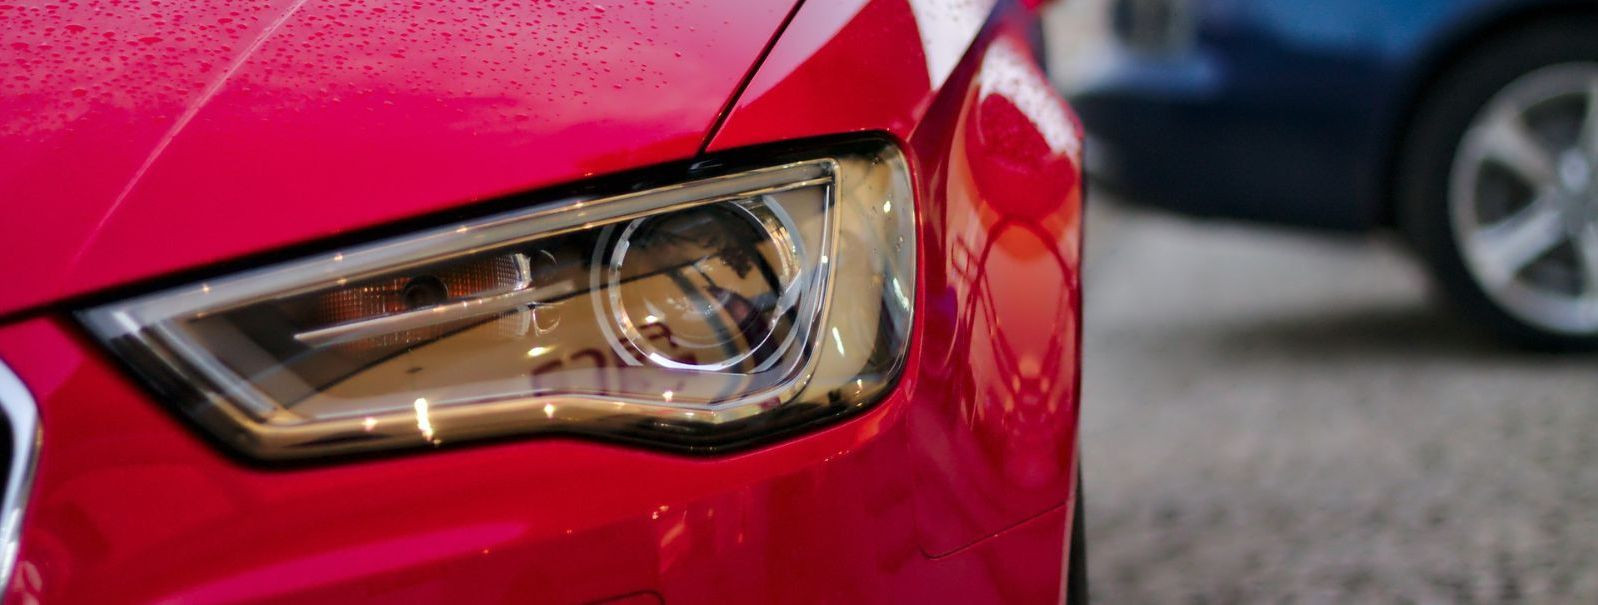 Sõiduki valgustus on kriitilise tähtsusega auto ohutuse ja funktsionaalsuse jaoks. Tehnoloogia arenguga arenevad ka standardid, mis määratlevad õige valgustuse.